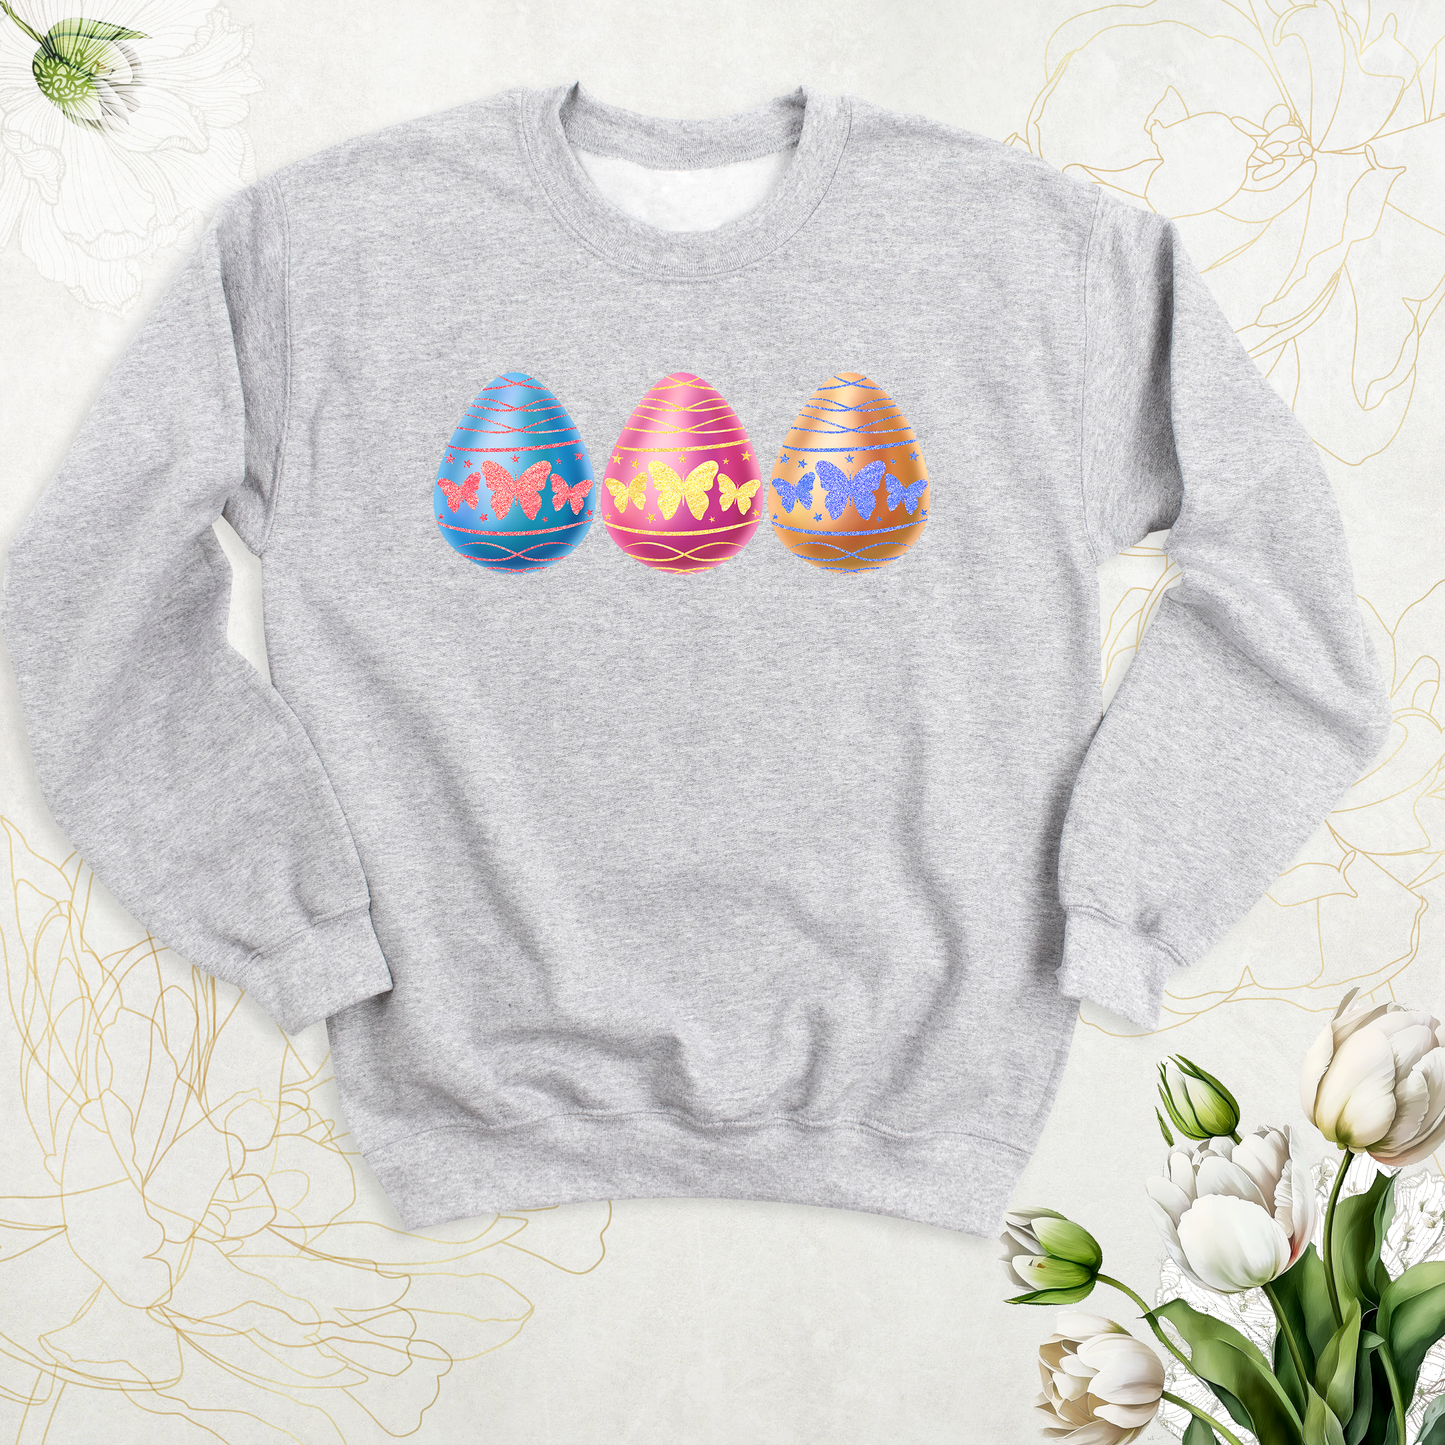 egg tshirts